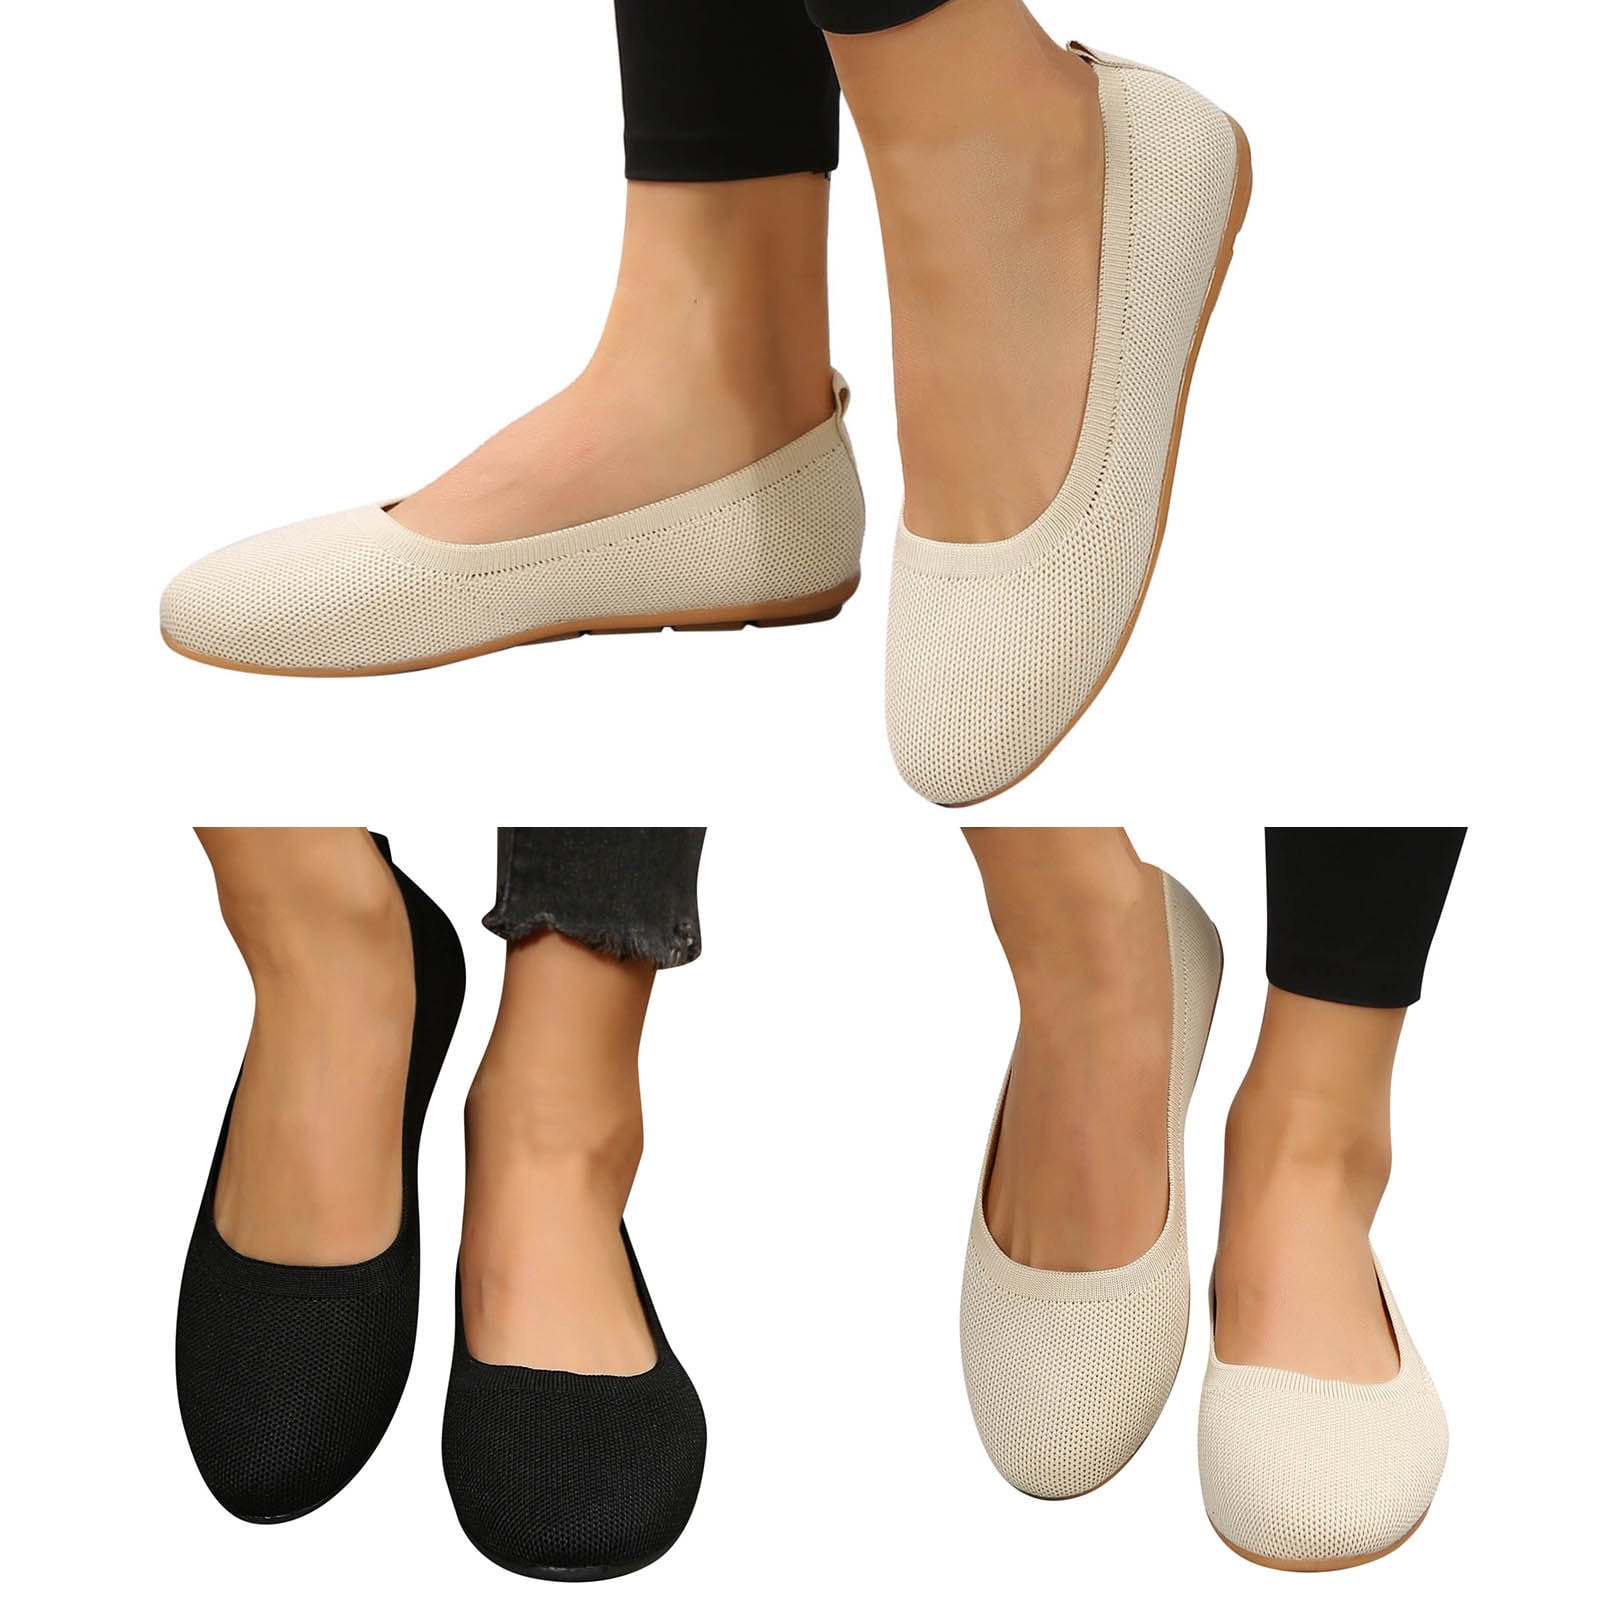 TOWED22 Flats For Women,Women's Flats Shoes Comfortable Memory Foam ...